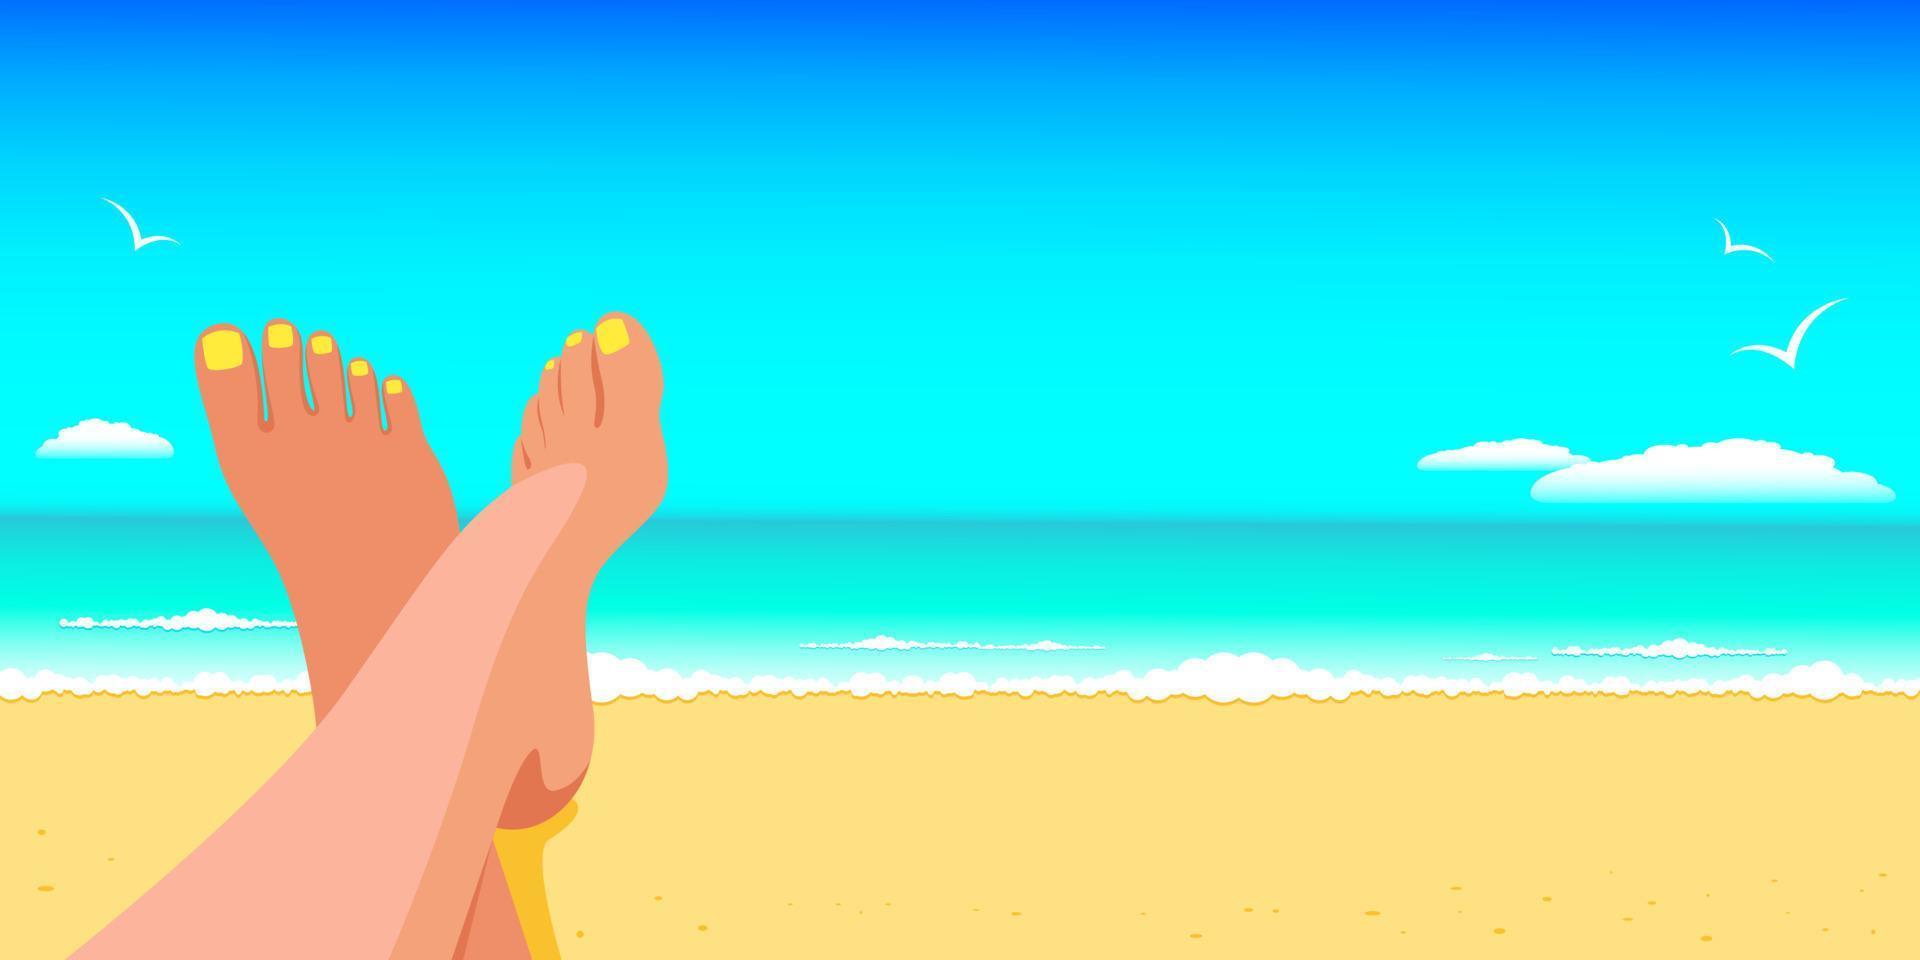 Frau liegt am Strand am Meer und sonnt sich an einem sonnigen Tag, Meereslandschaft. das konzept von urlaub und reise zum meer, sommerferien. bannerdesign mit kopierraum. Stock-Vektor-Illustration. vektor